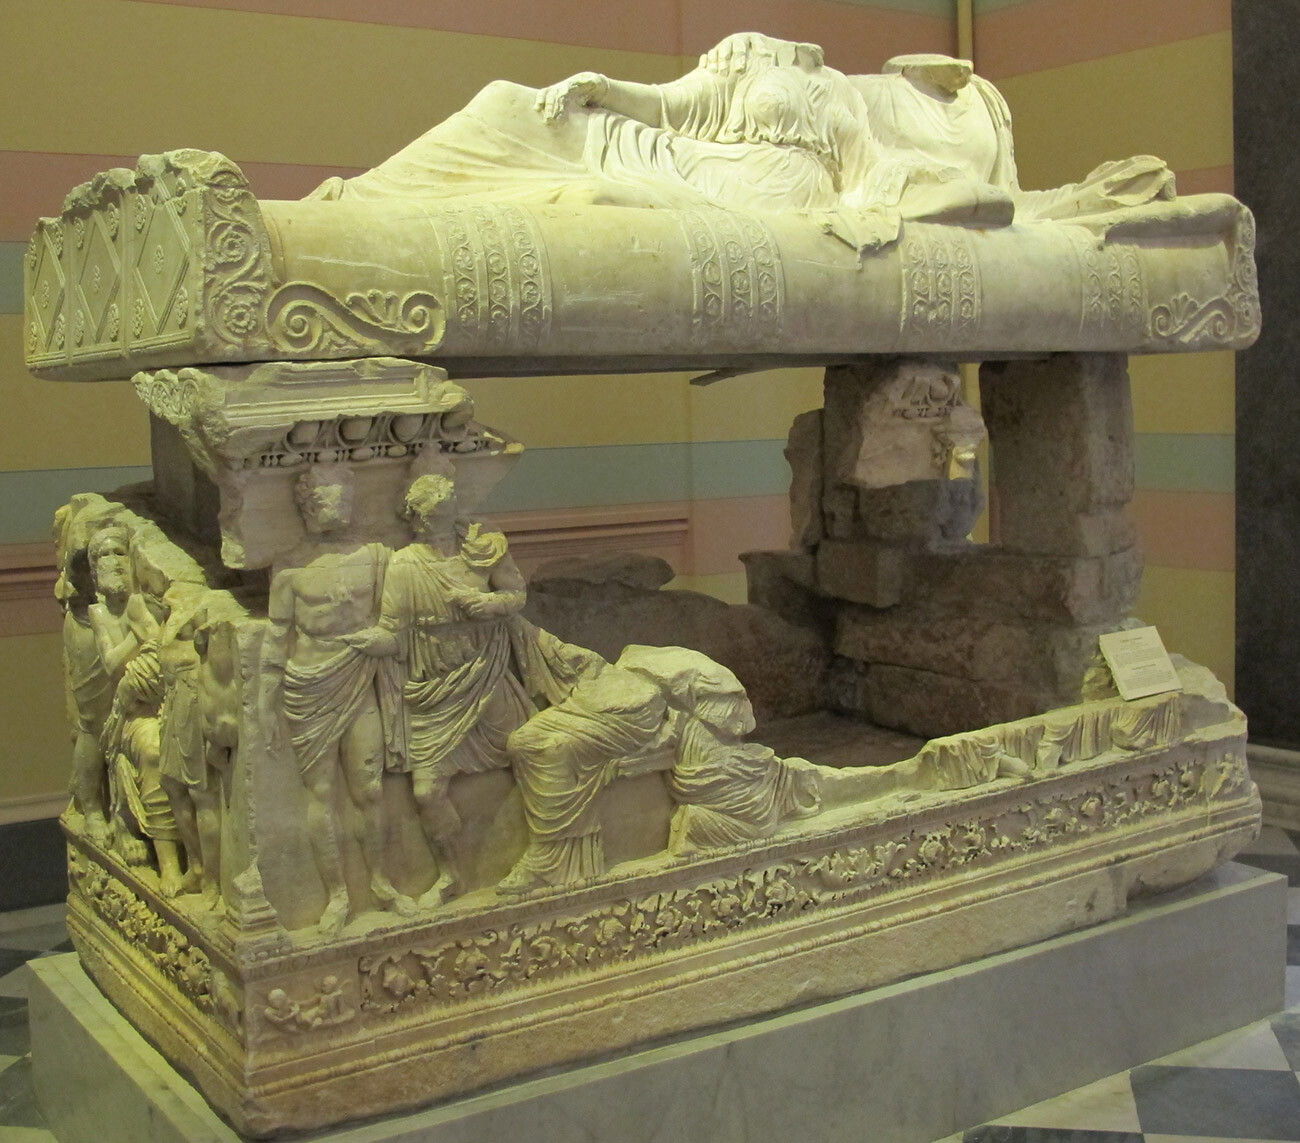 Sarcófago de Myrmekia en la colección del Hermitage.

